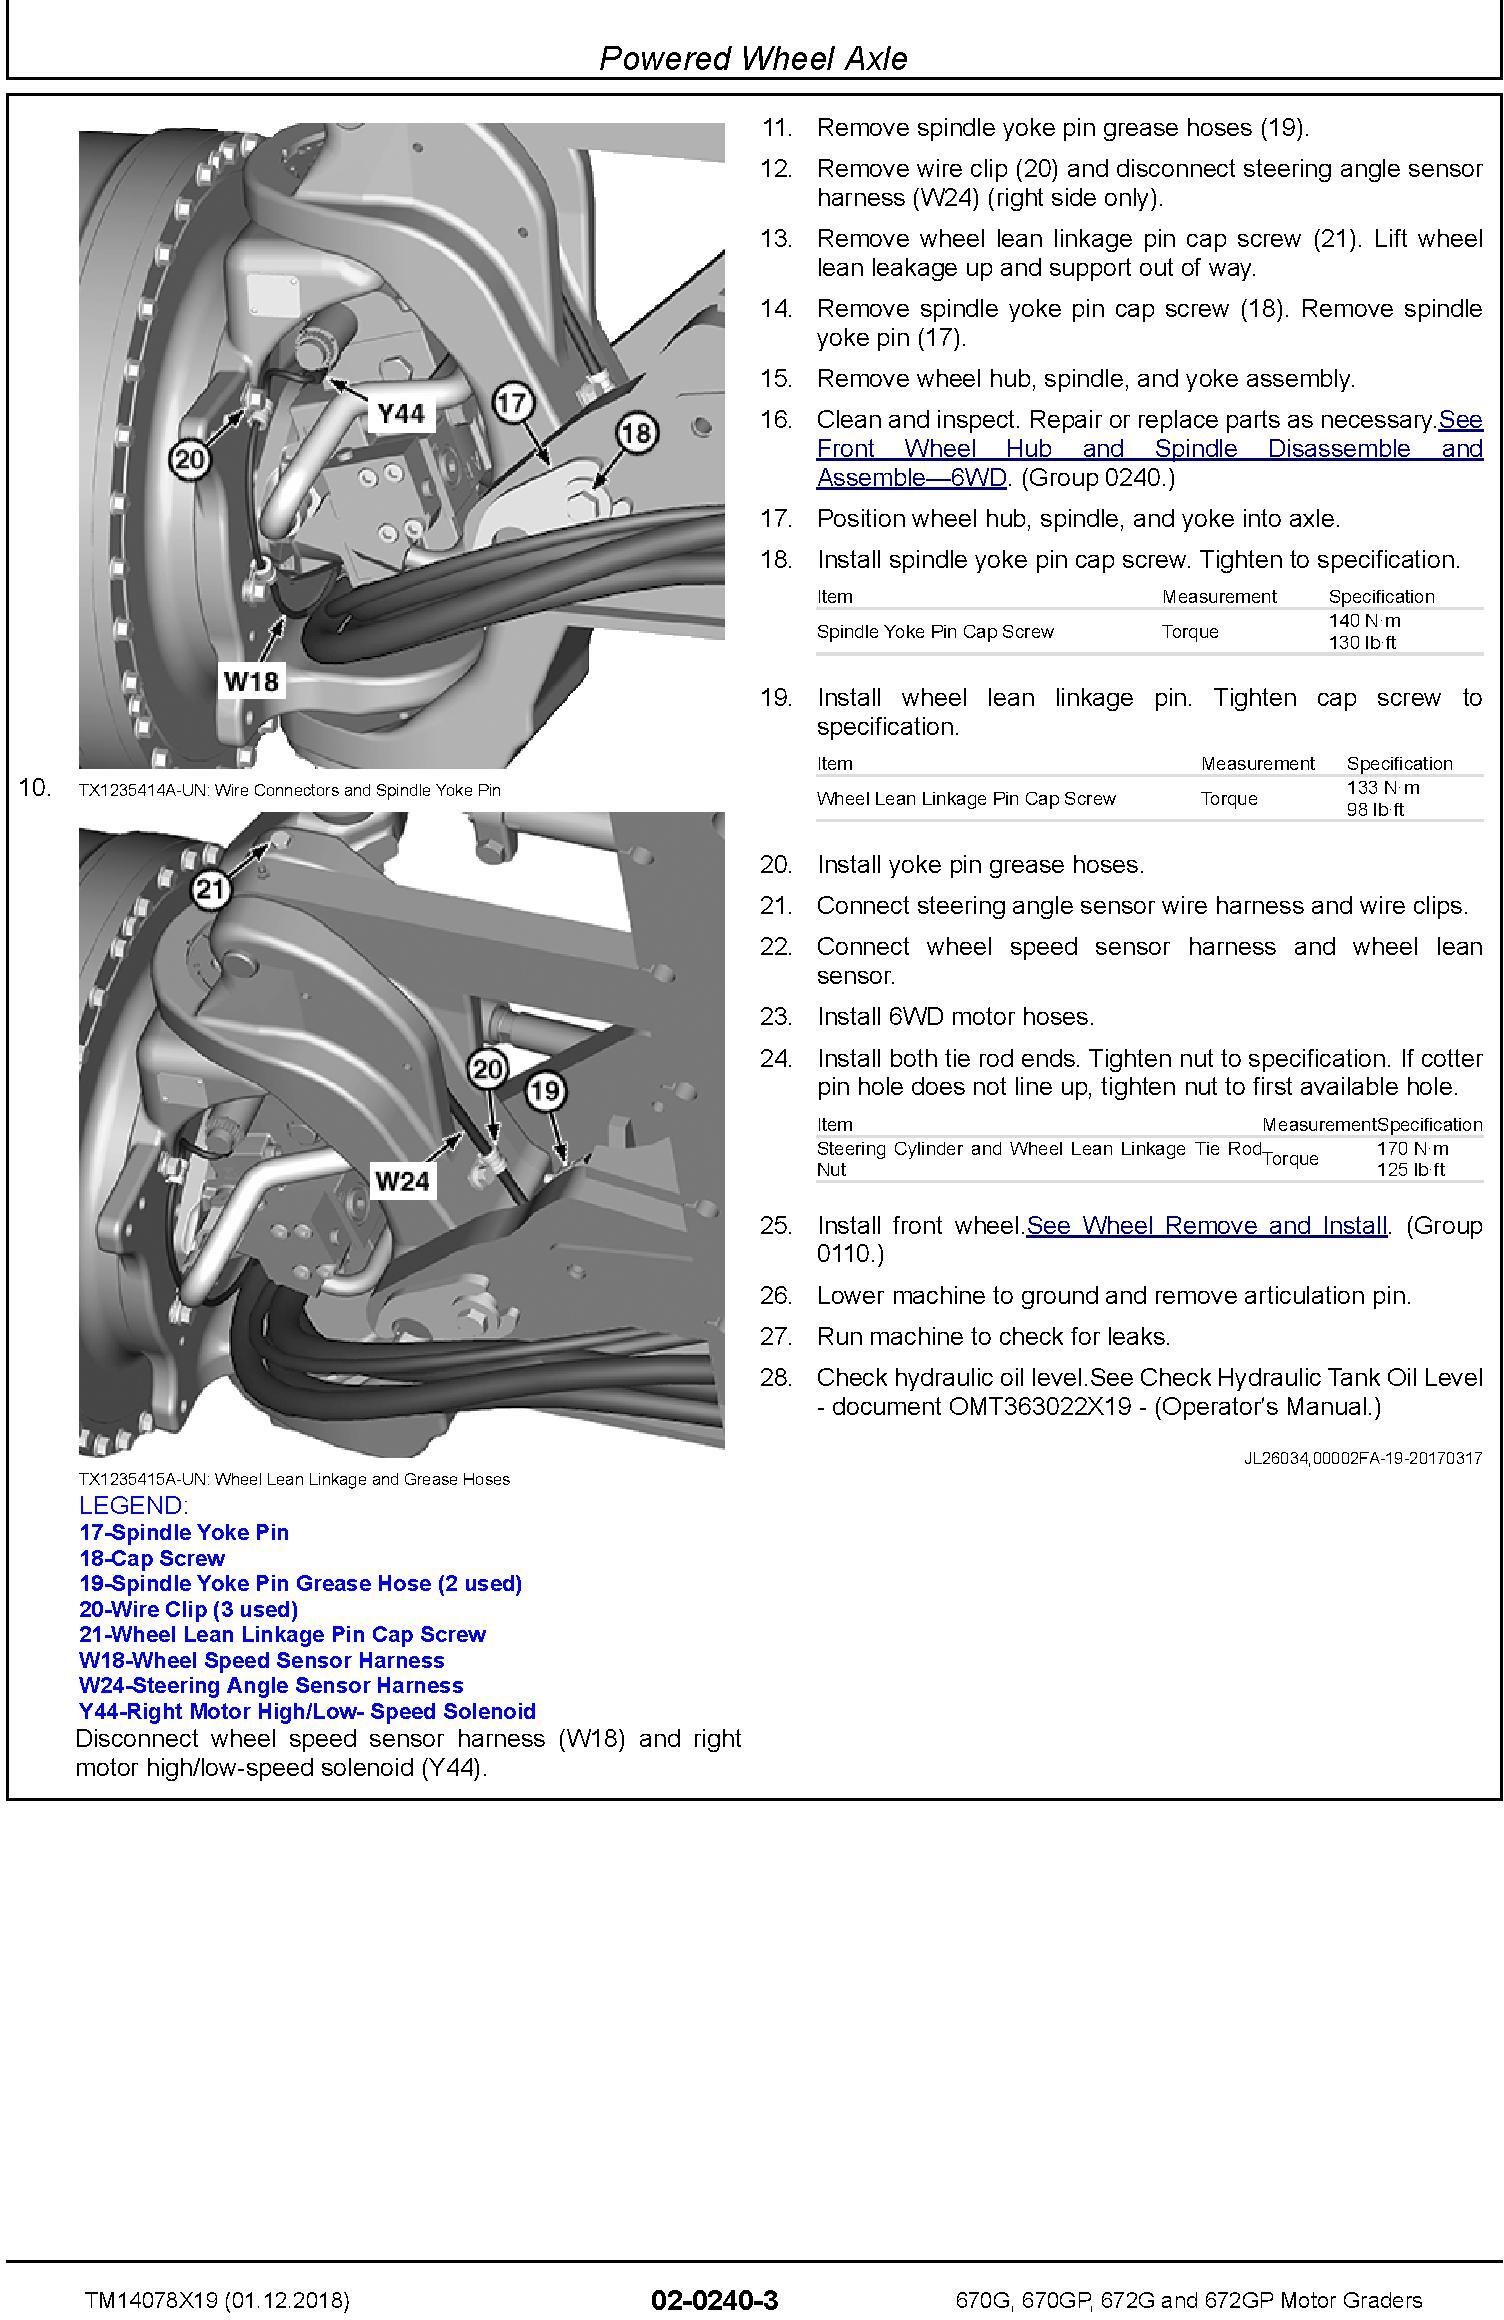 John Deere 670G, 670GP, 672G, 672GP (SN. C678818—680877) Motor Graders Repair Manual (TM14078X19) - 3